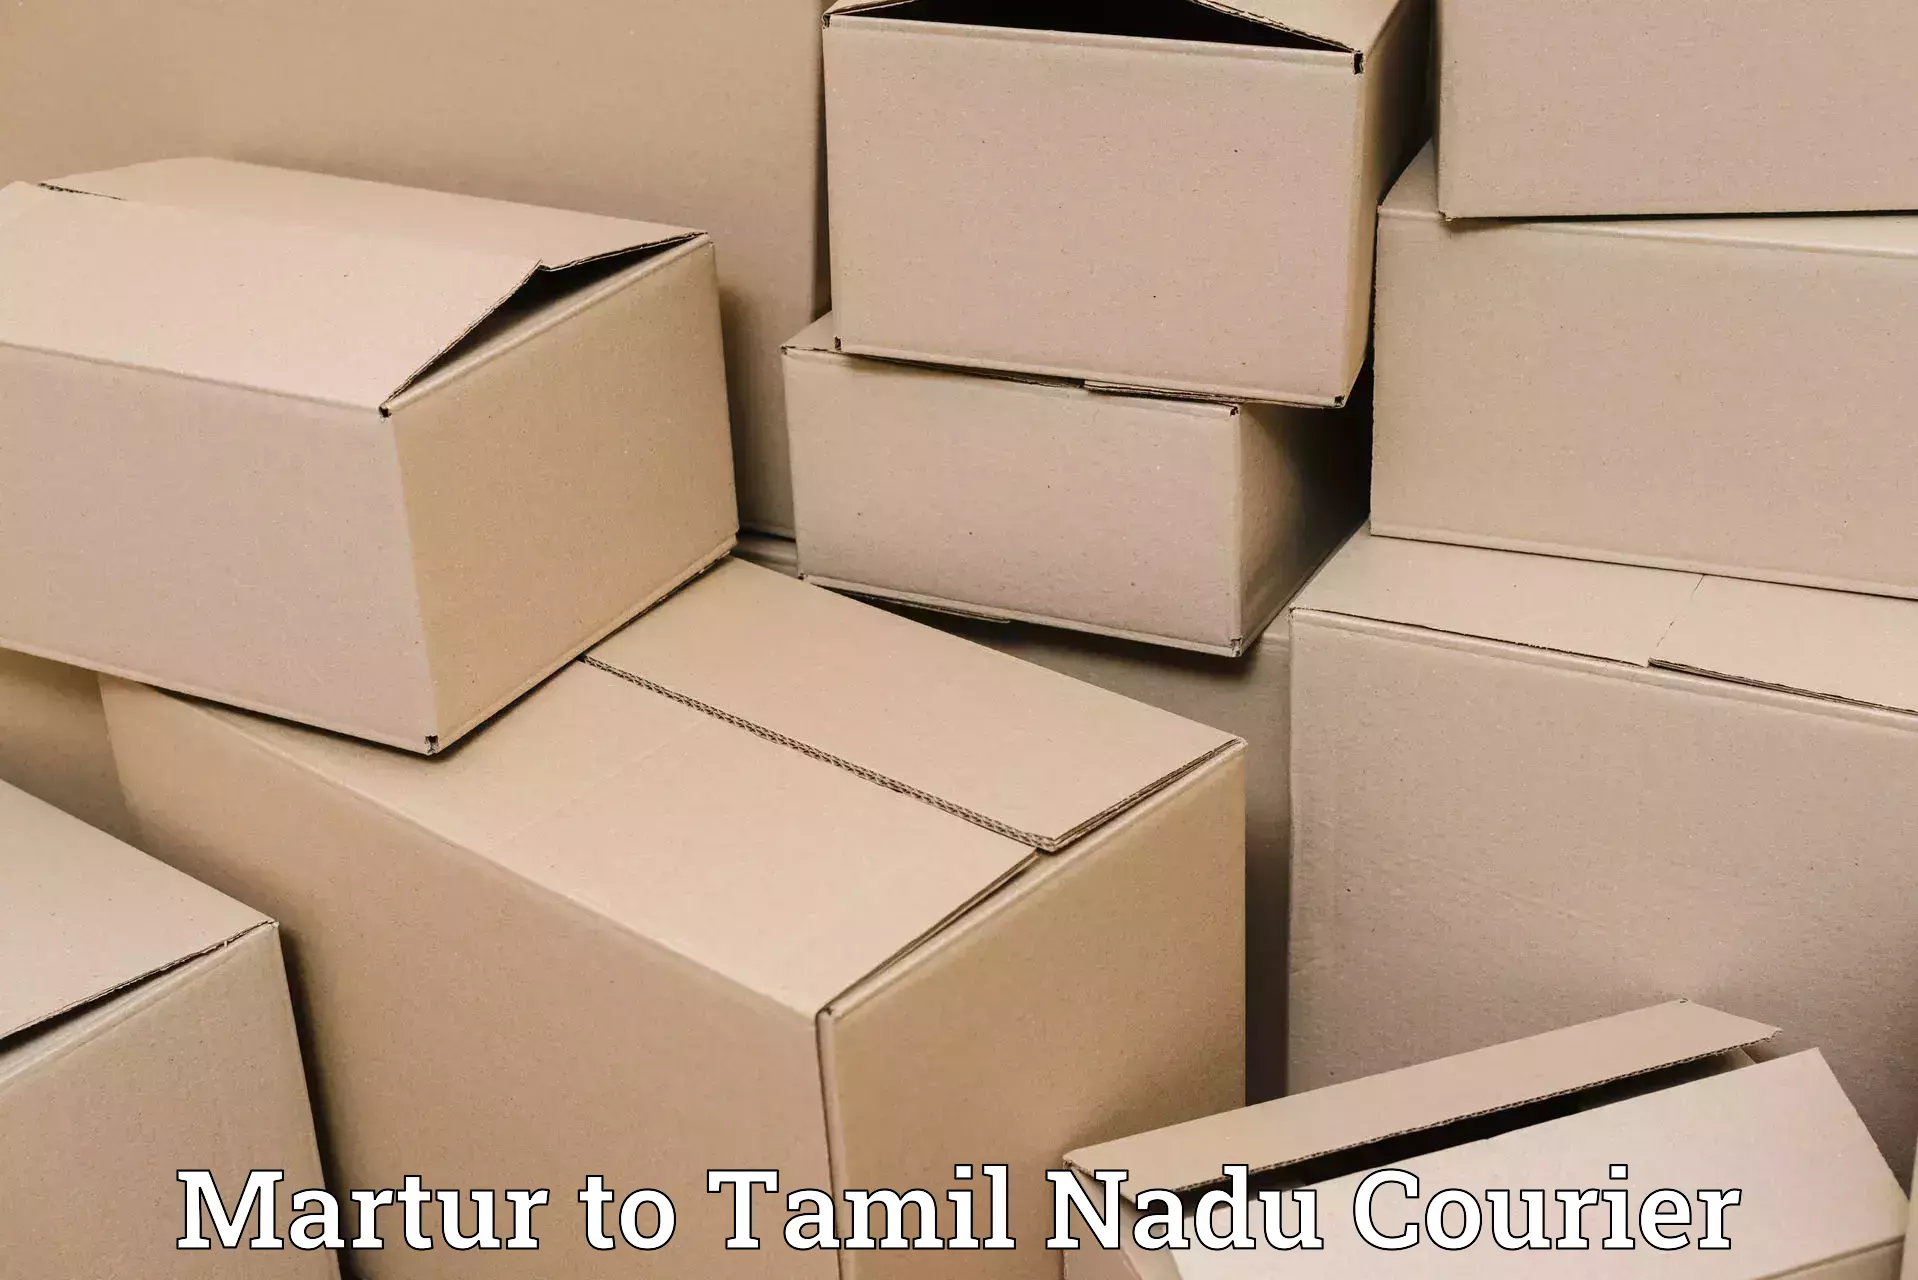 Professional parcel services Martur to Tamil Nadu